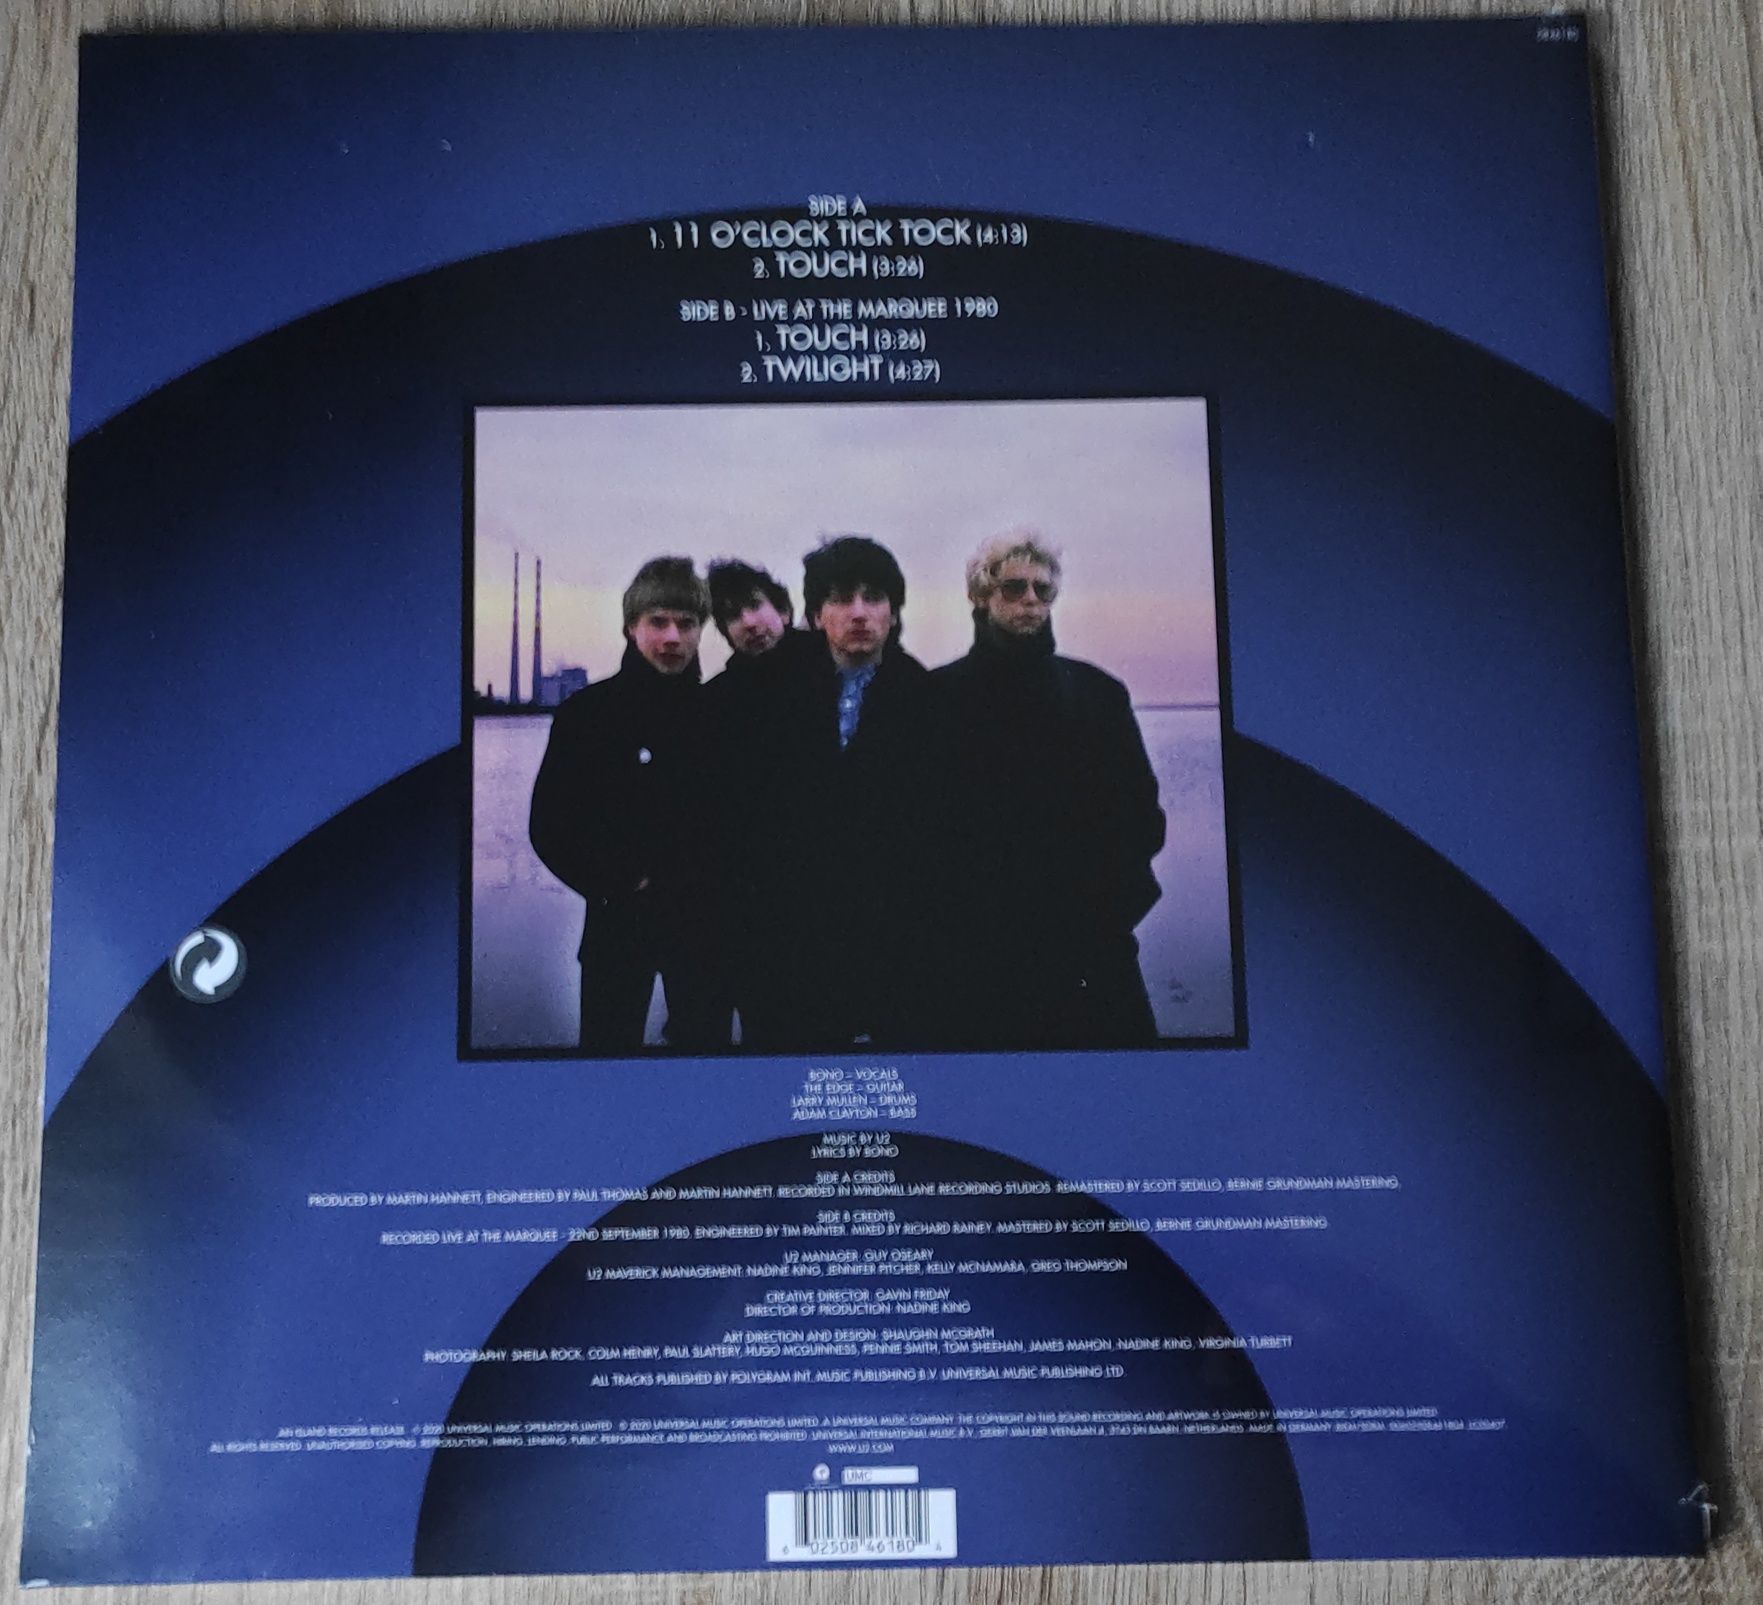 U2 - 11 O'Clock Tick Rock 12" Vinyl